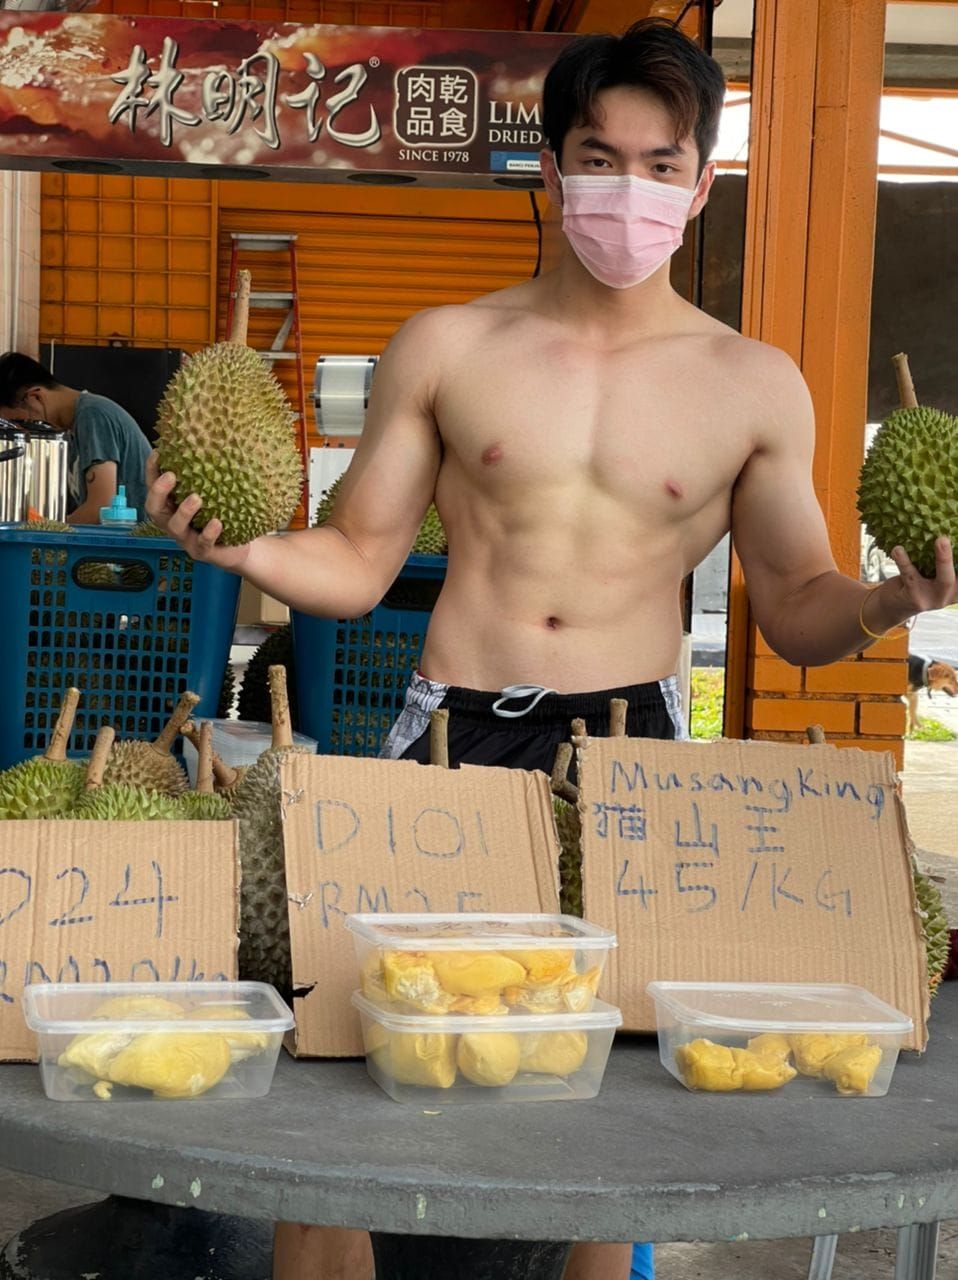 Pemuda promosikan jualan duriannya dengan mengunggah foto dirinya yang telanjang dada sedang memegang durian.